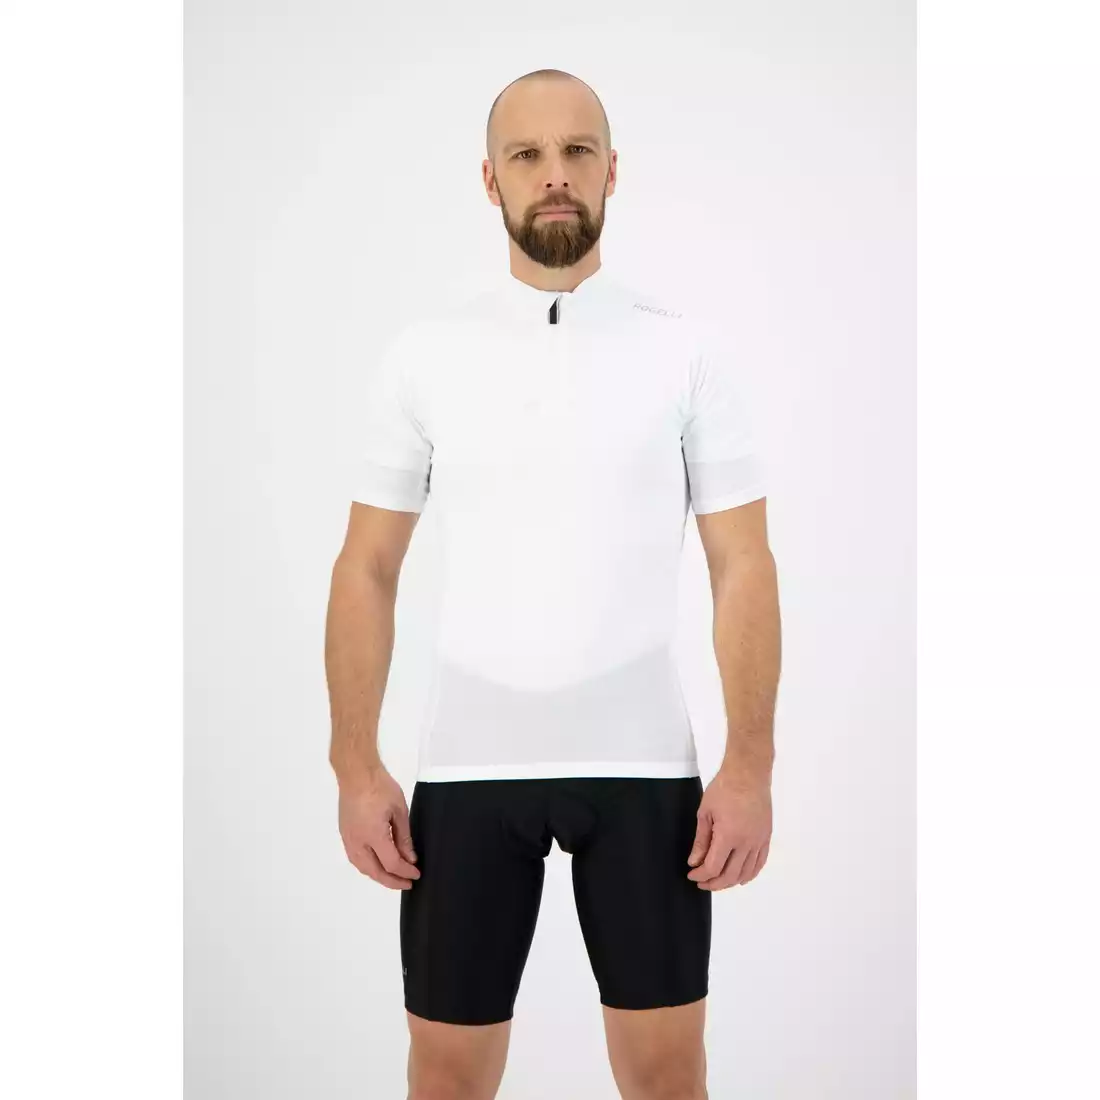 Rogelli CORE pánský cyklistický dres, Bílý